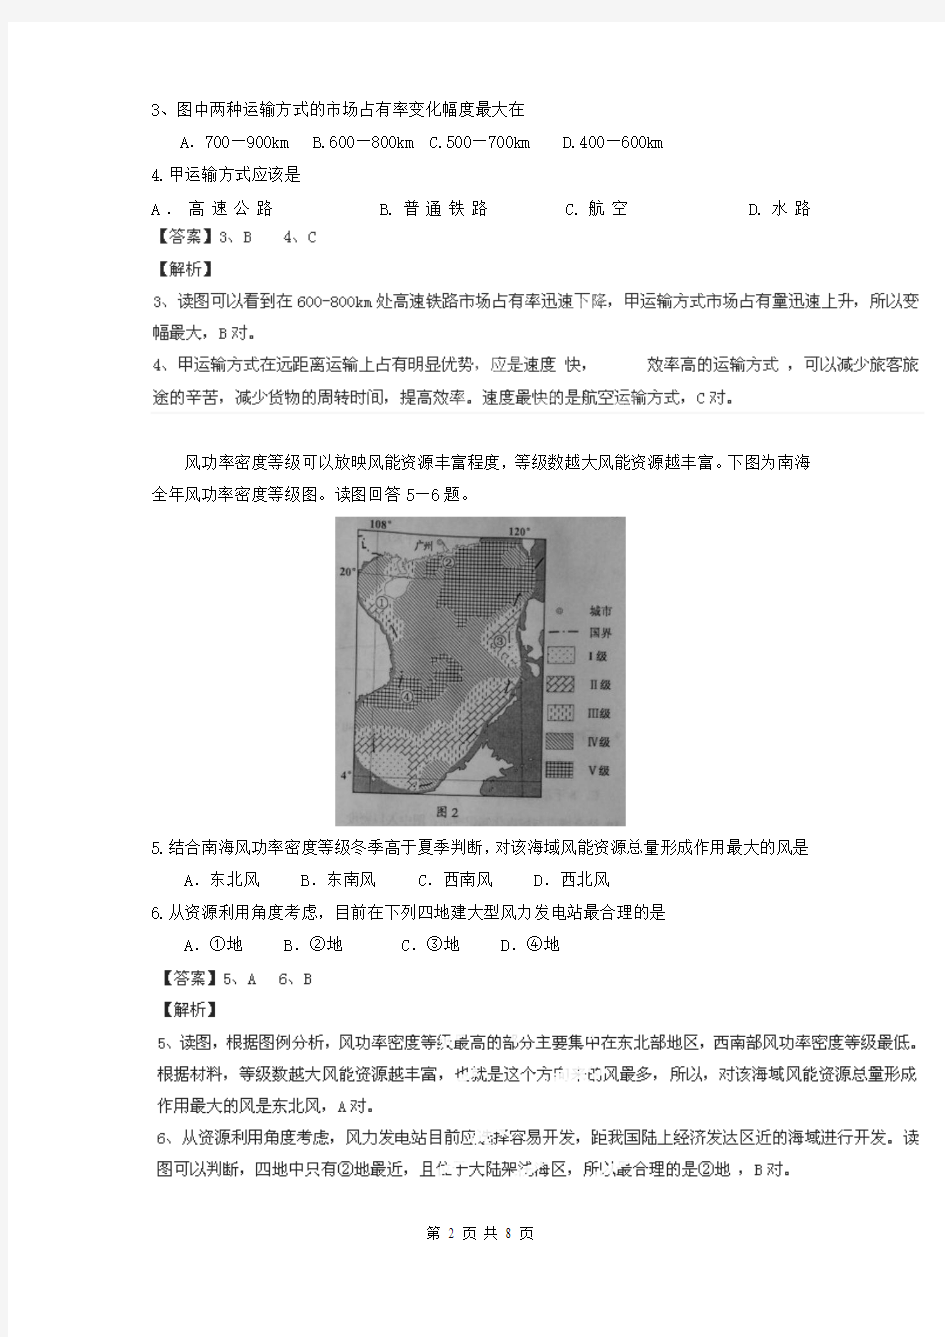 2014年高考真题——文综地理(四川卷)解析版